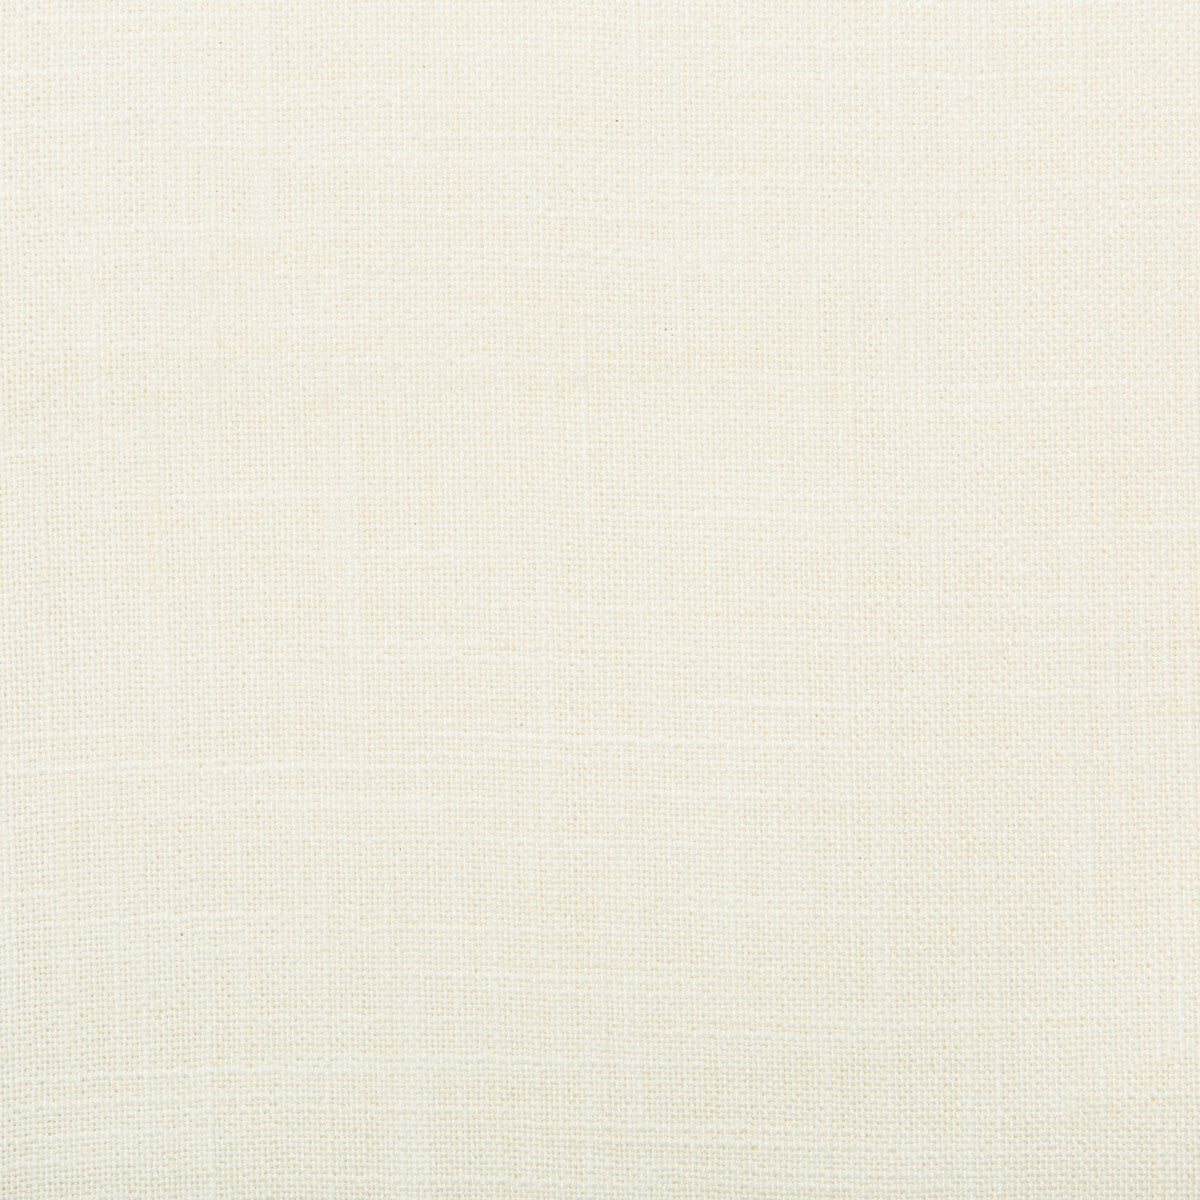 Kravet Basics fabric in 4668-101 color - pattern 4668.101.0 - by Kravet Basics